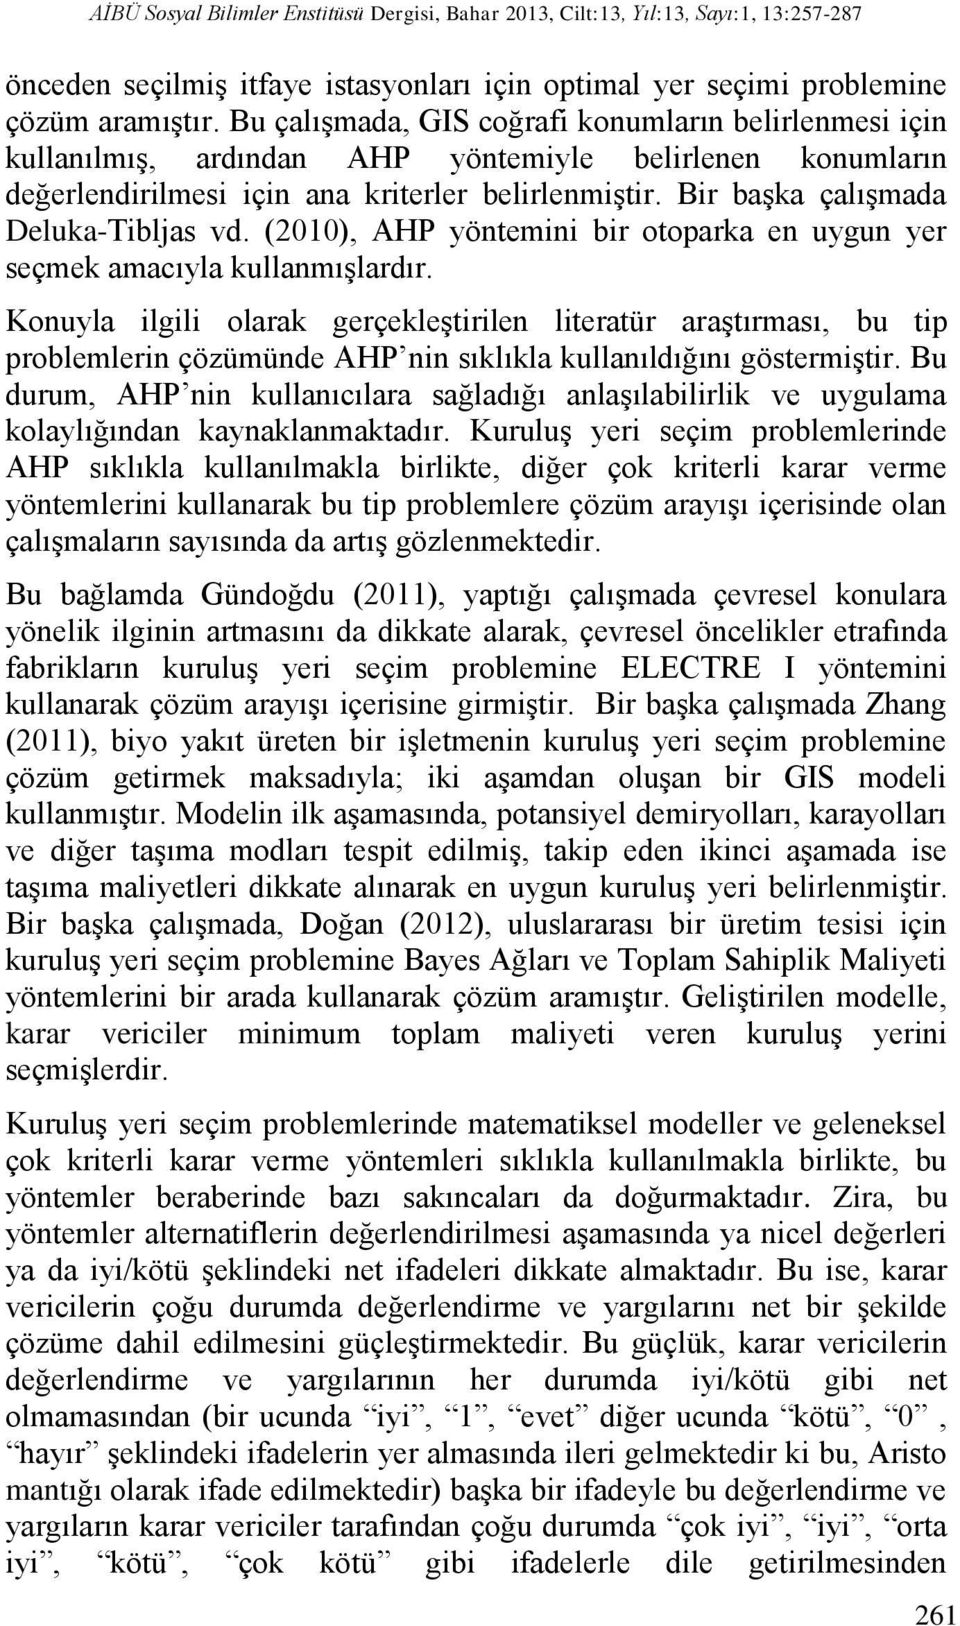 Bir başka çalışmada Deluka-Tibljas vd. (2010), AHP yöntemini bir otoparka en uygun yer seçmek amacıyla kullanmışlardır.